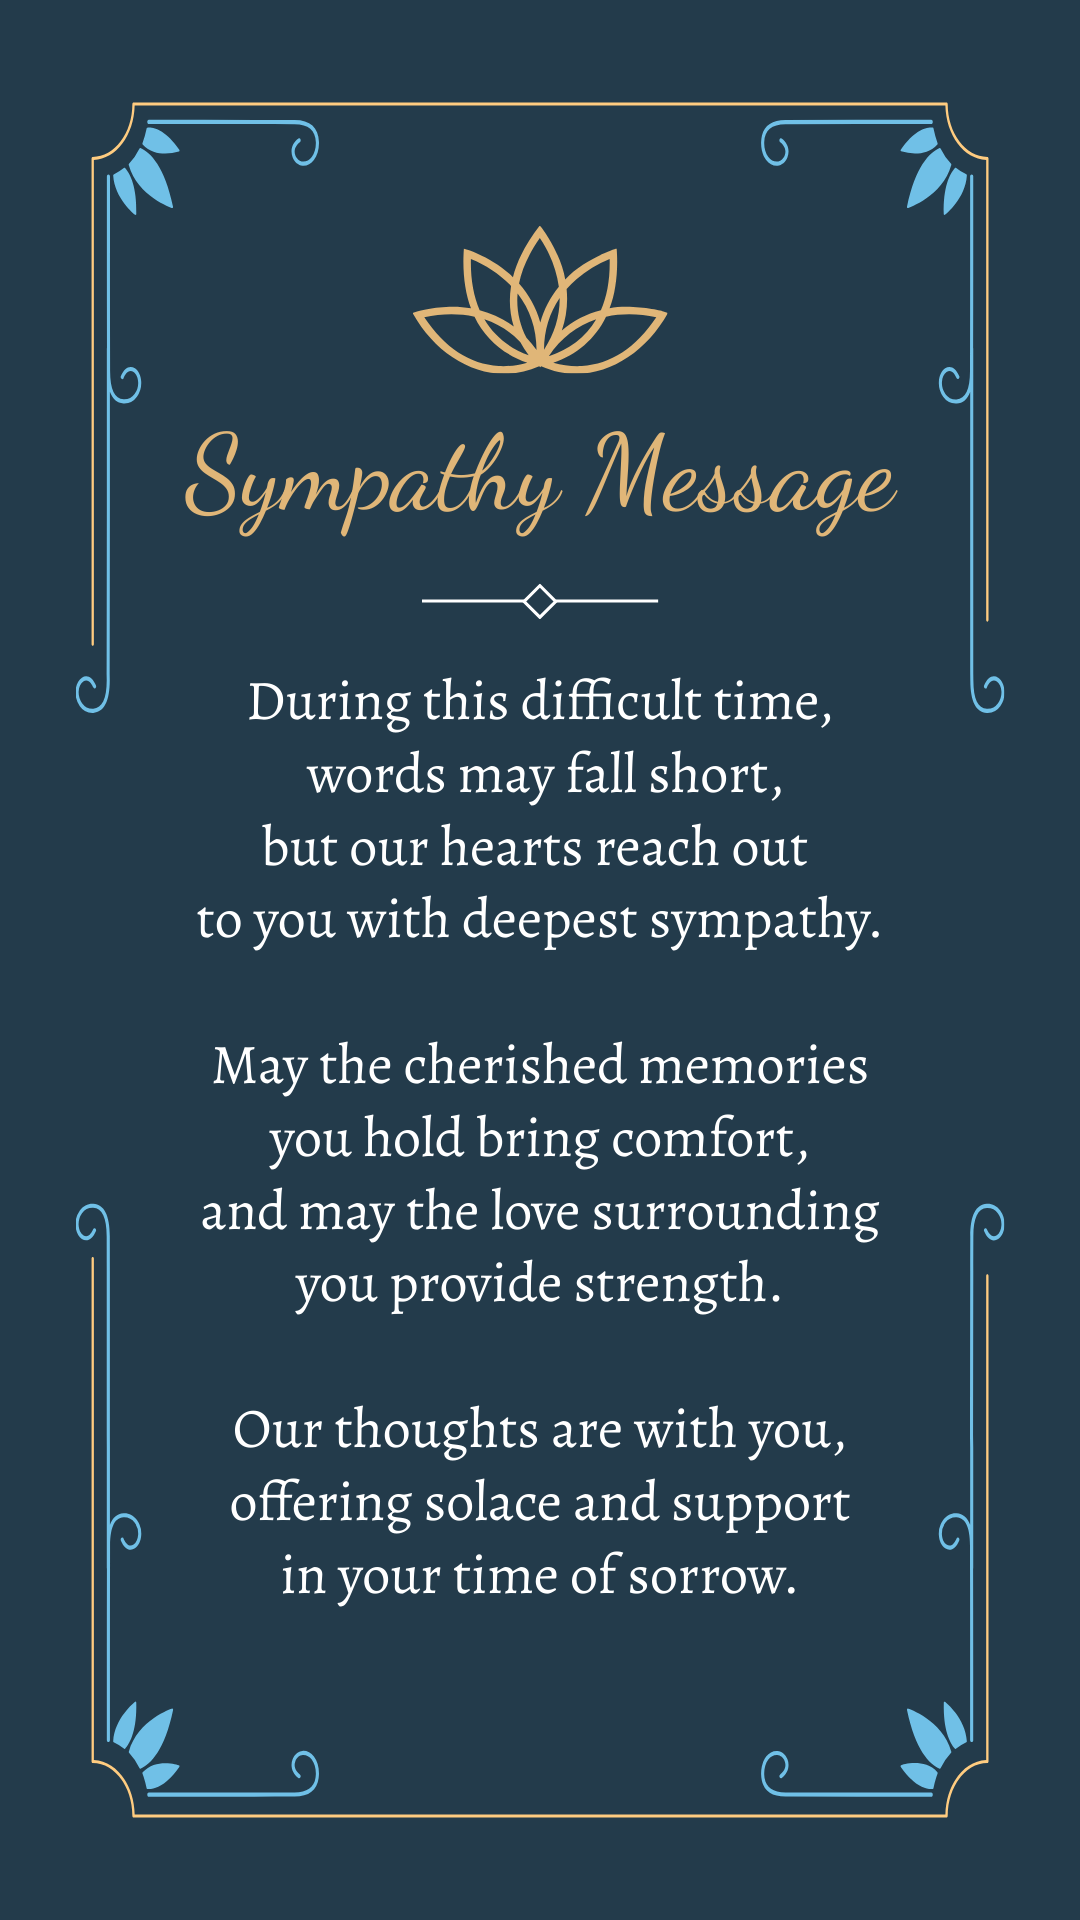 Sympathy Comfort Sympathy Message